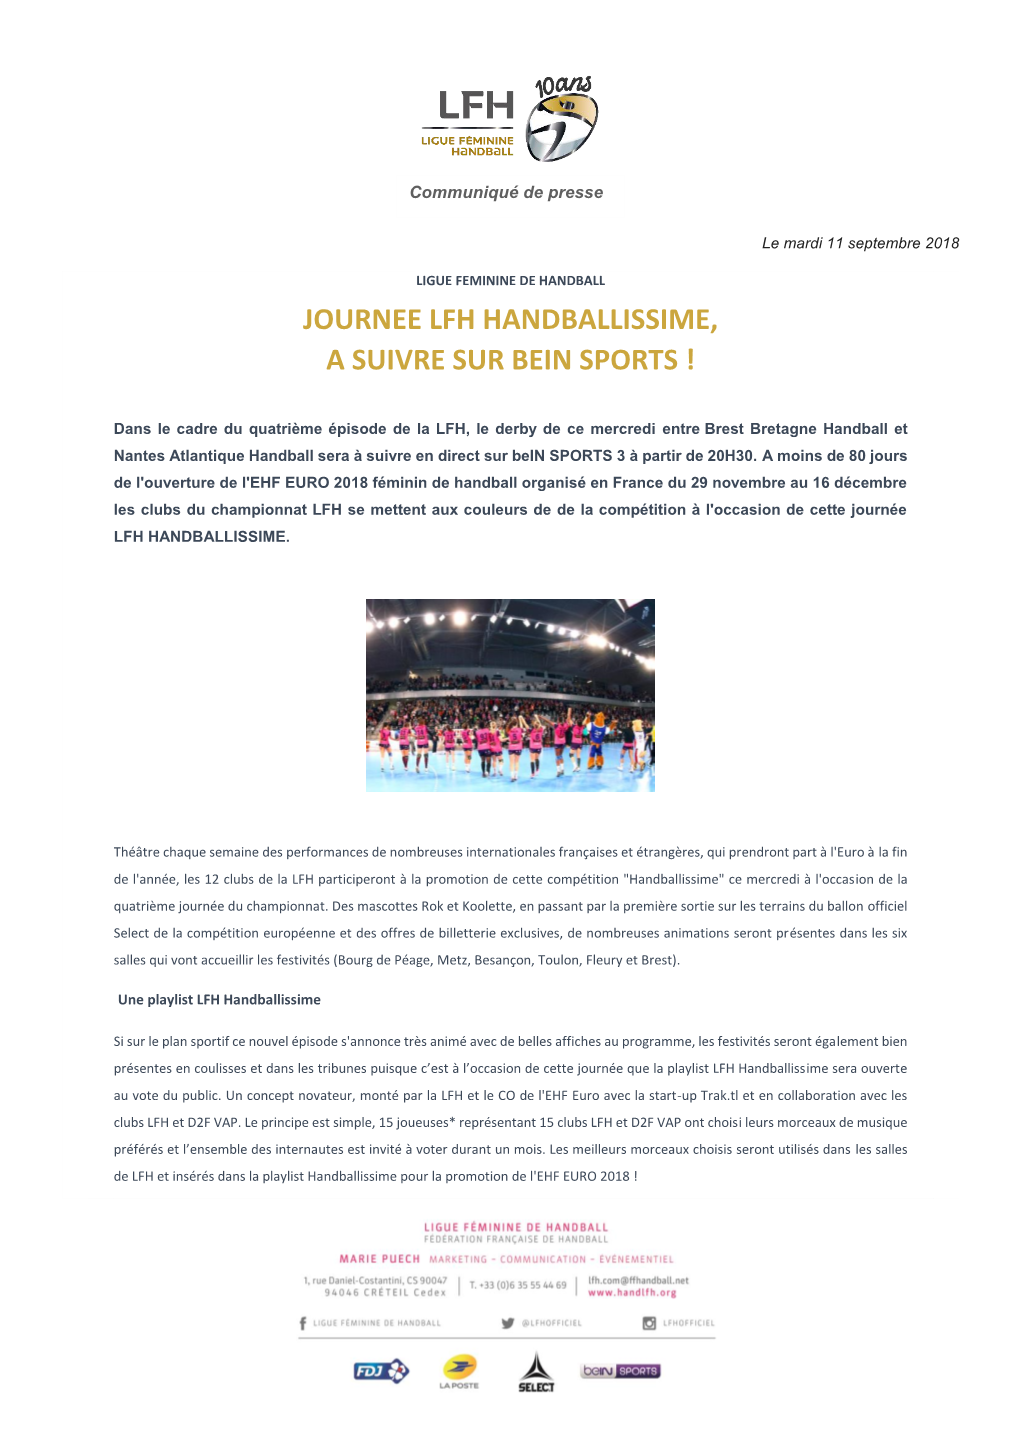 Journee Lfh Handballissime, a Suivre Sur Bein Sports !